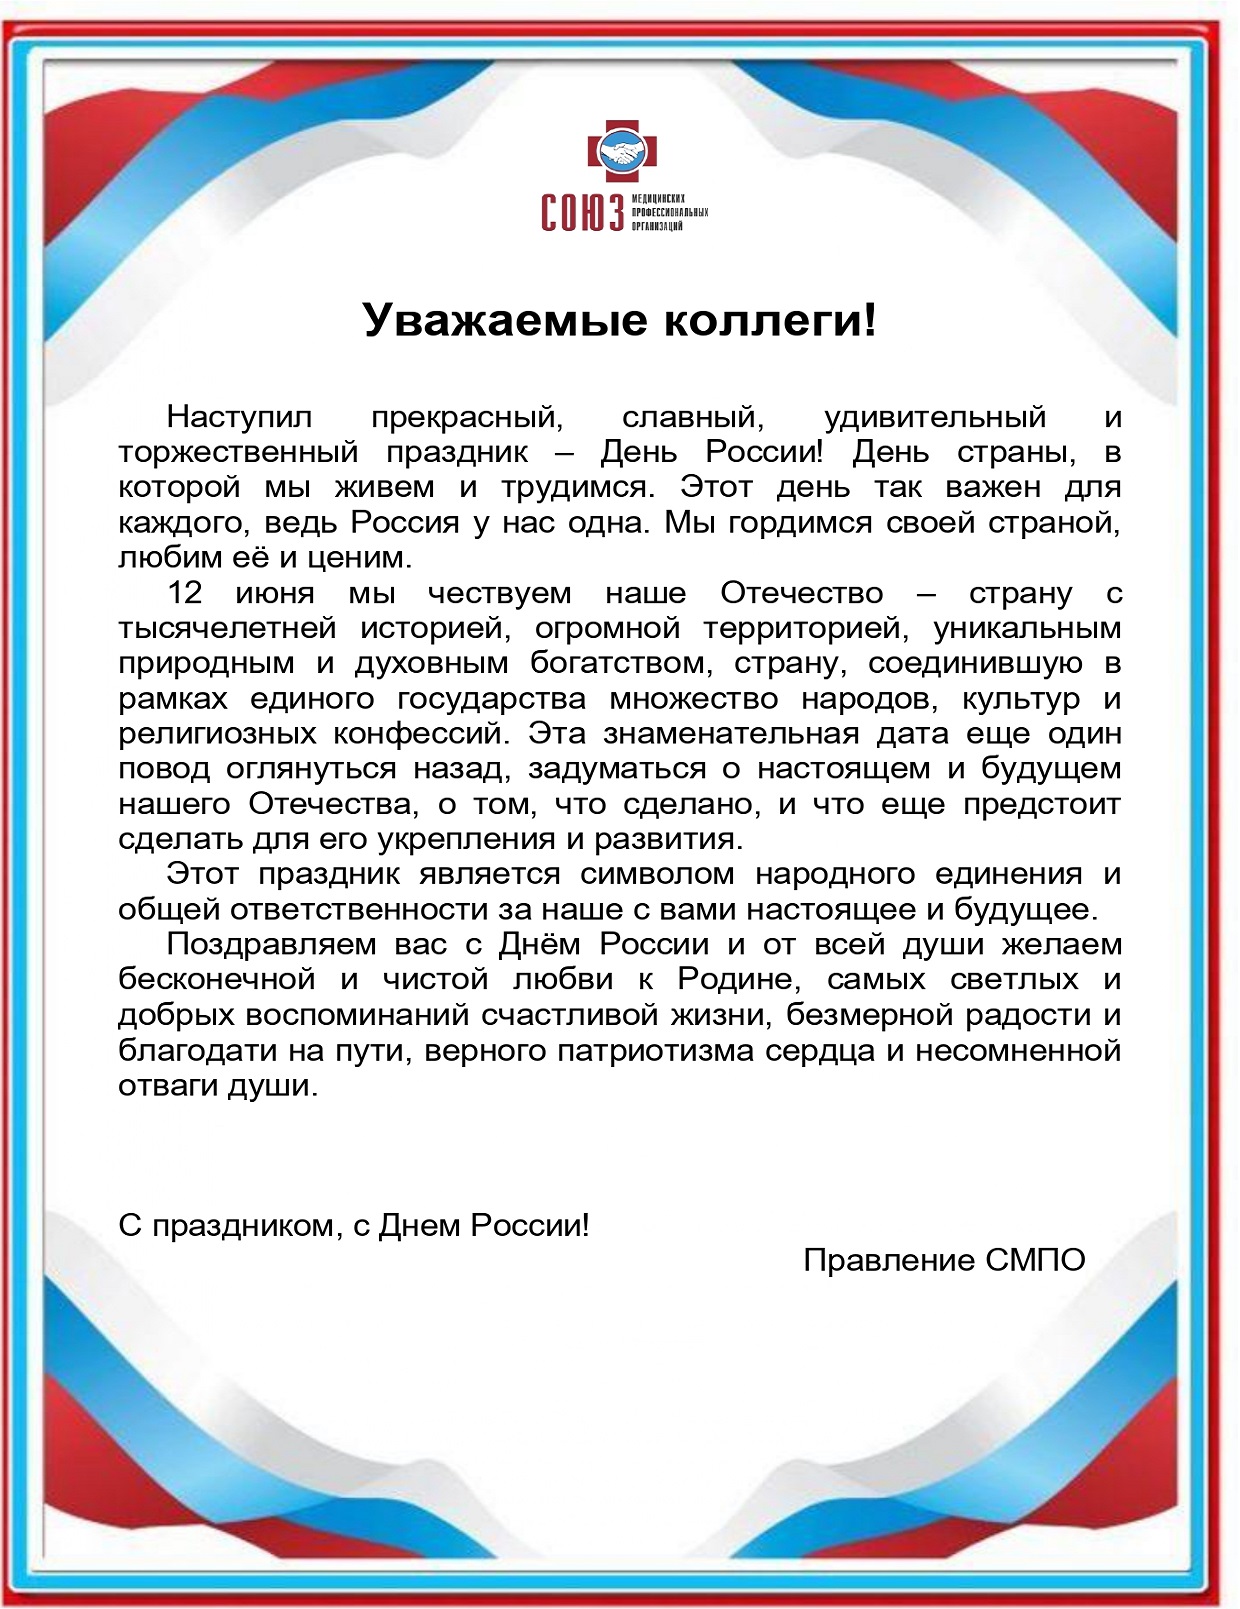 Поздравление с Днем России от Правления Союза медицинских профессиональных организаций!